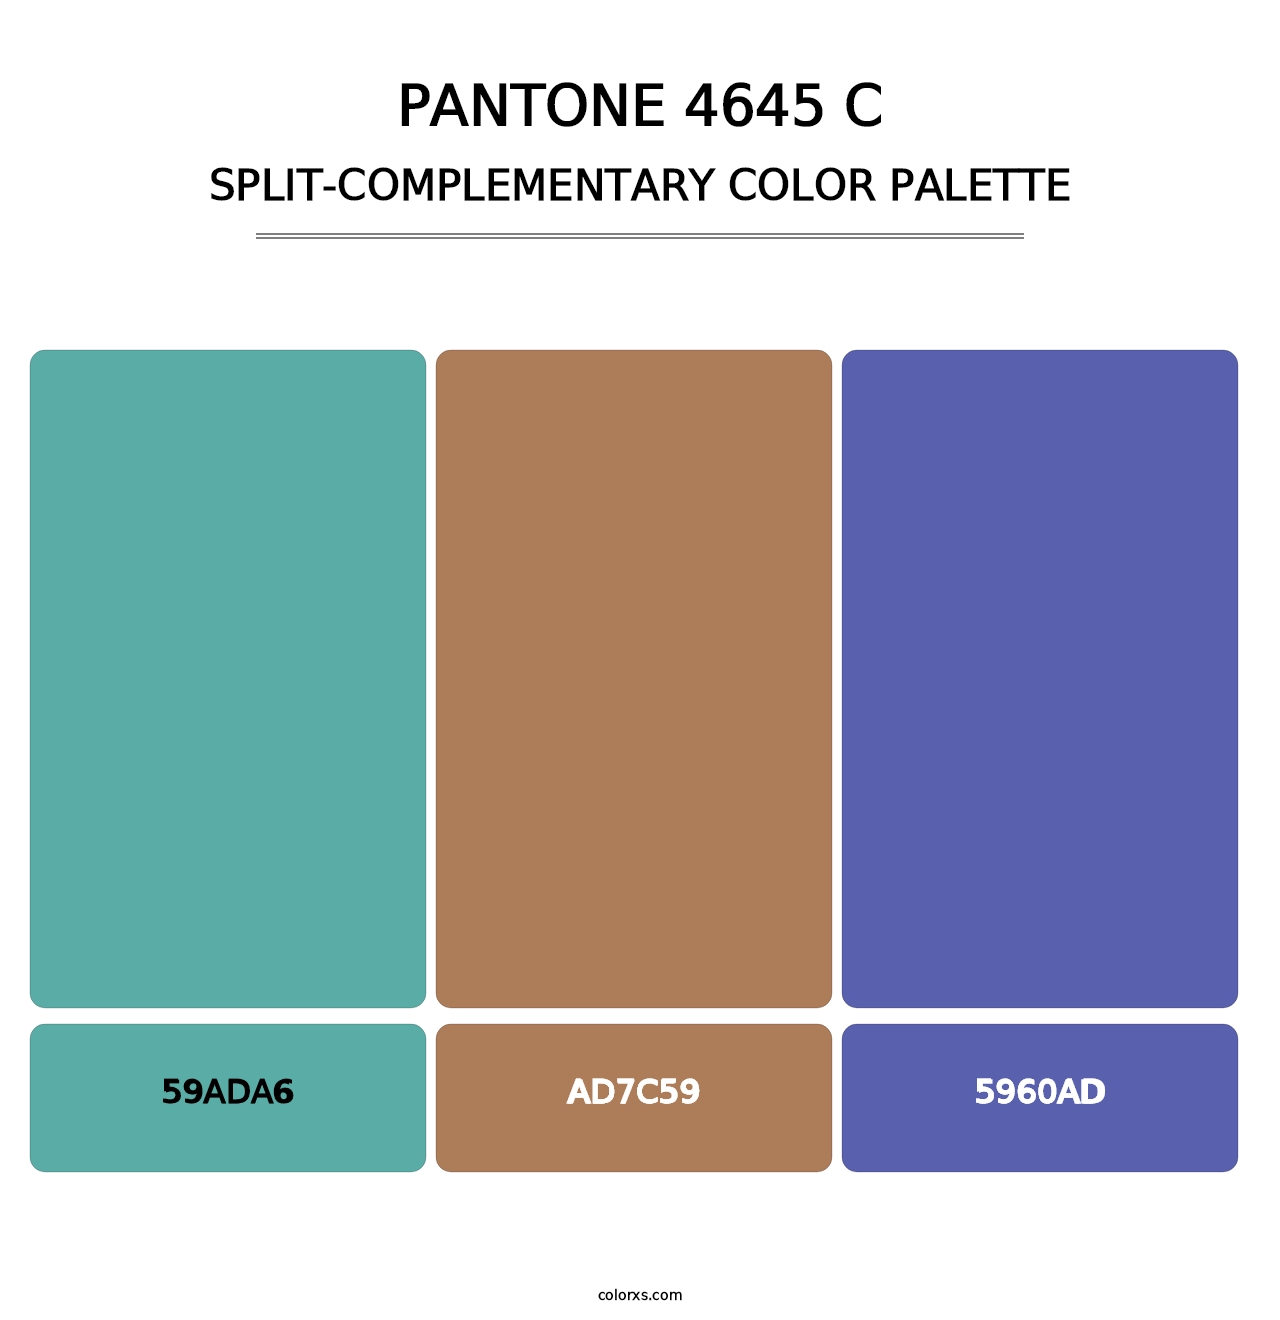 PANTONE 4645 C - Split-Complementary Color Palette